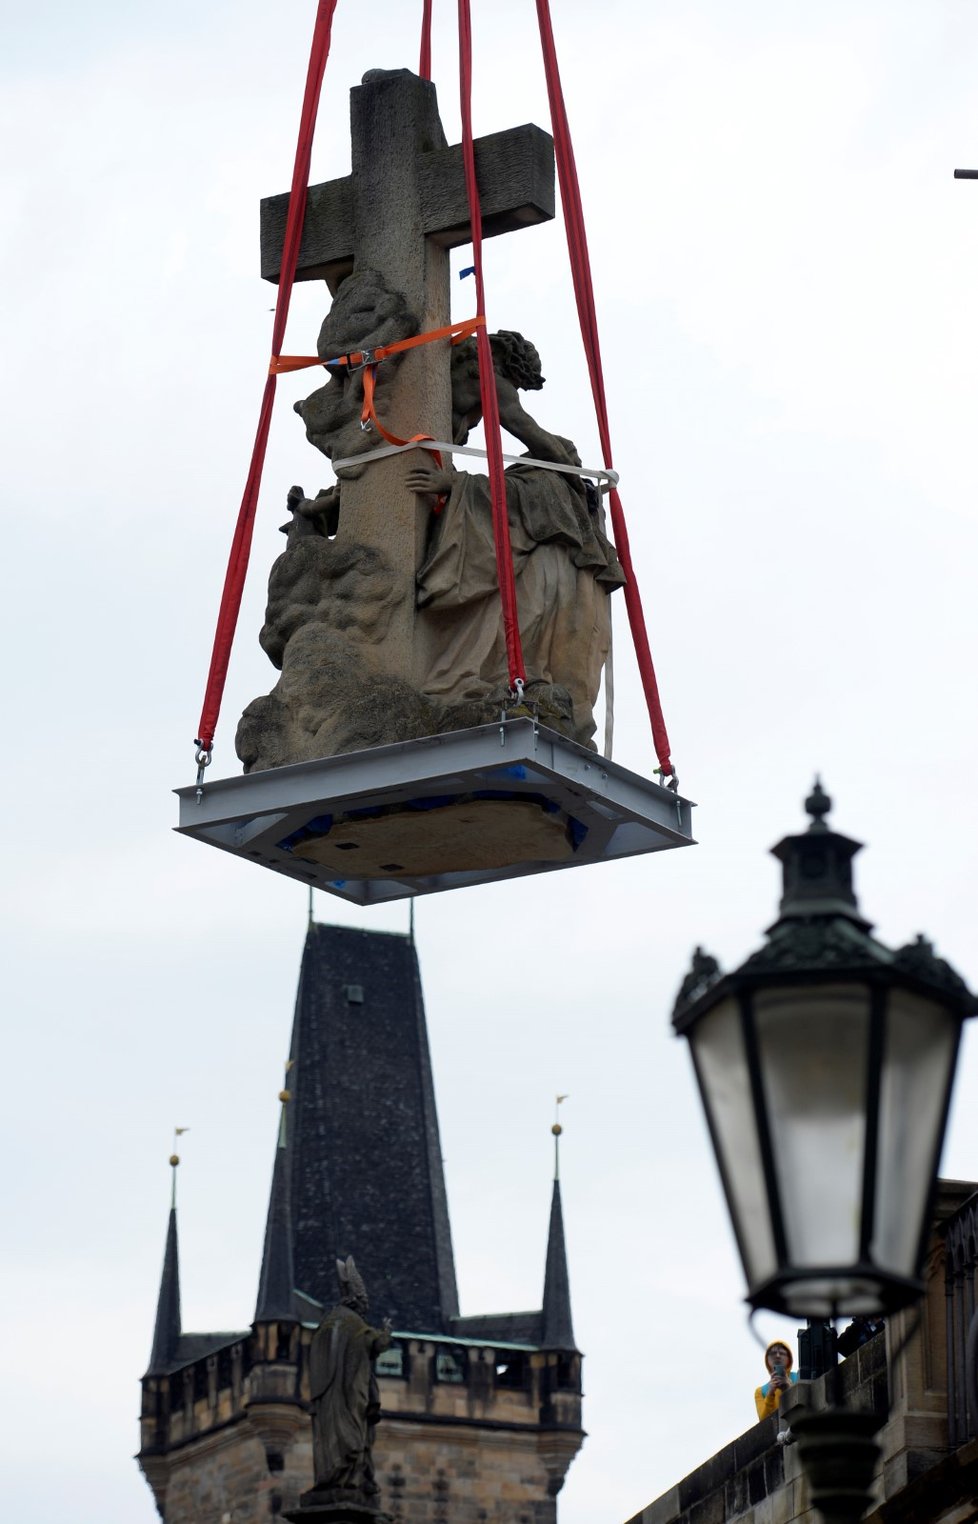 Z pražského Karlova mostu bylo 5. června 2020 sneseno sousoší svaté Luitgardy. Důvodem je chystaná oprava trhliny v pilíři mostu pod sousoším.